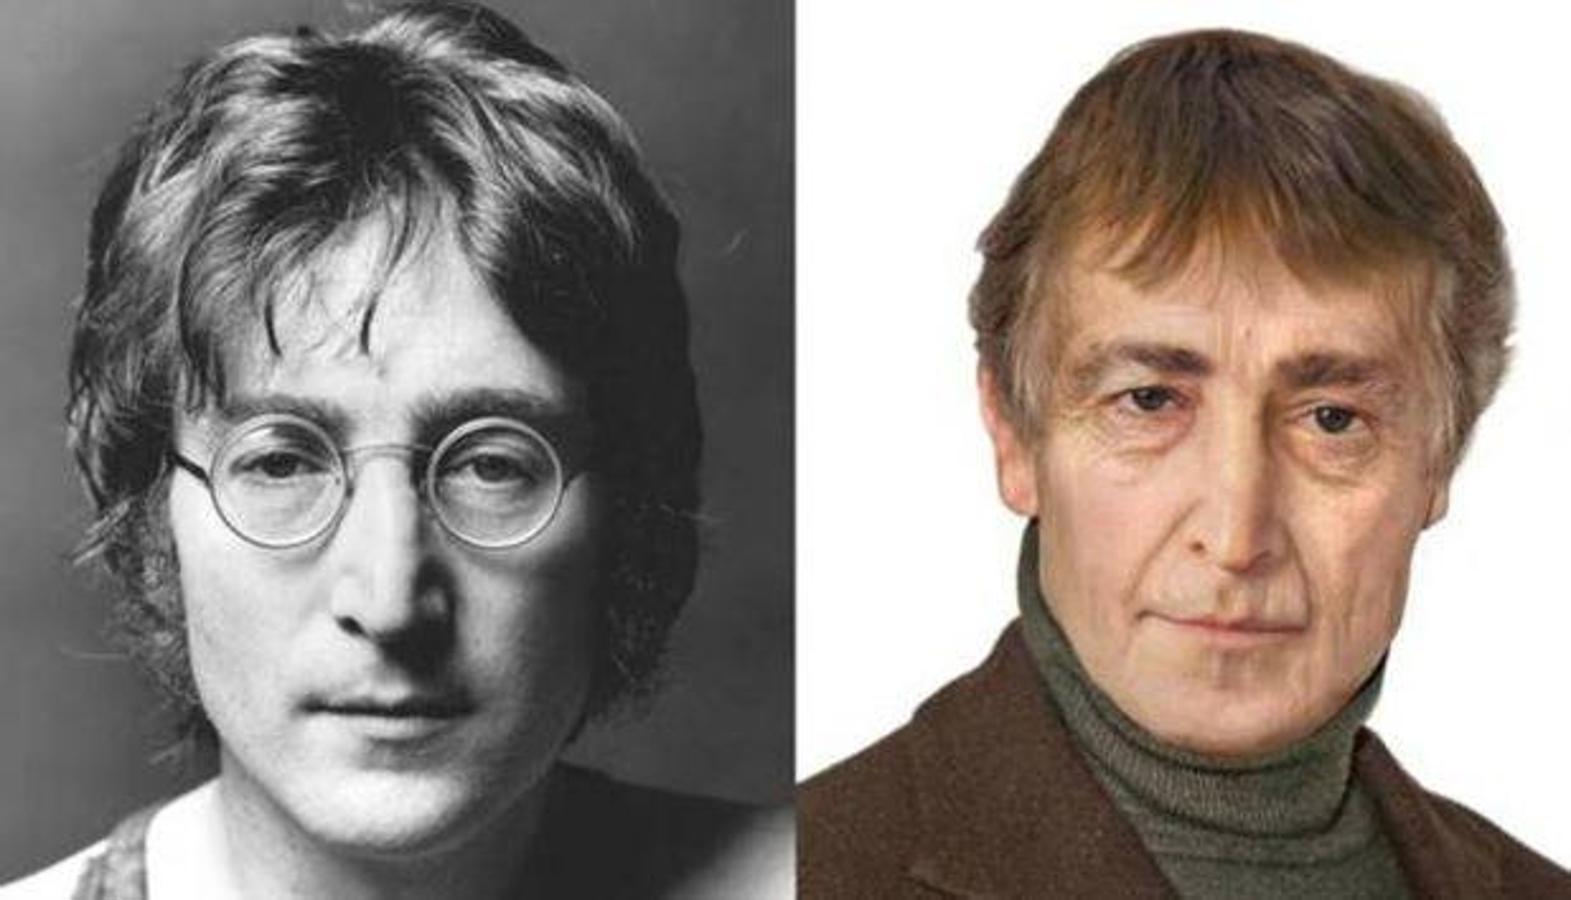 John Lennon. Cantante y músico británico, fundador y líder de The Beatles, el mítico cuarteto de Liverpool que dominó el panorama musical en la década de 1960. El 8 de diciembre de 1980, las balas asesinas de un admirador perturbado terminaron con su vida. Tenía 40 años.